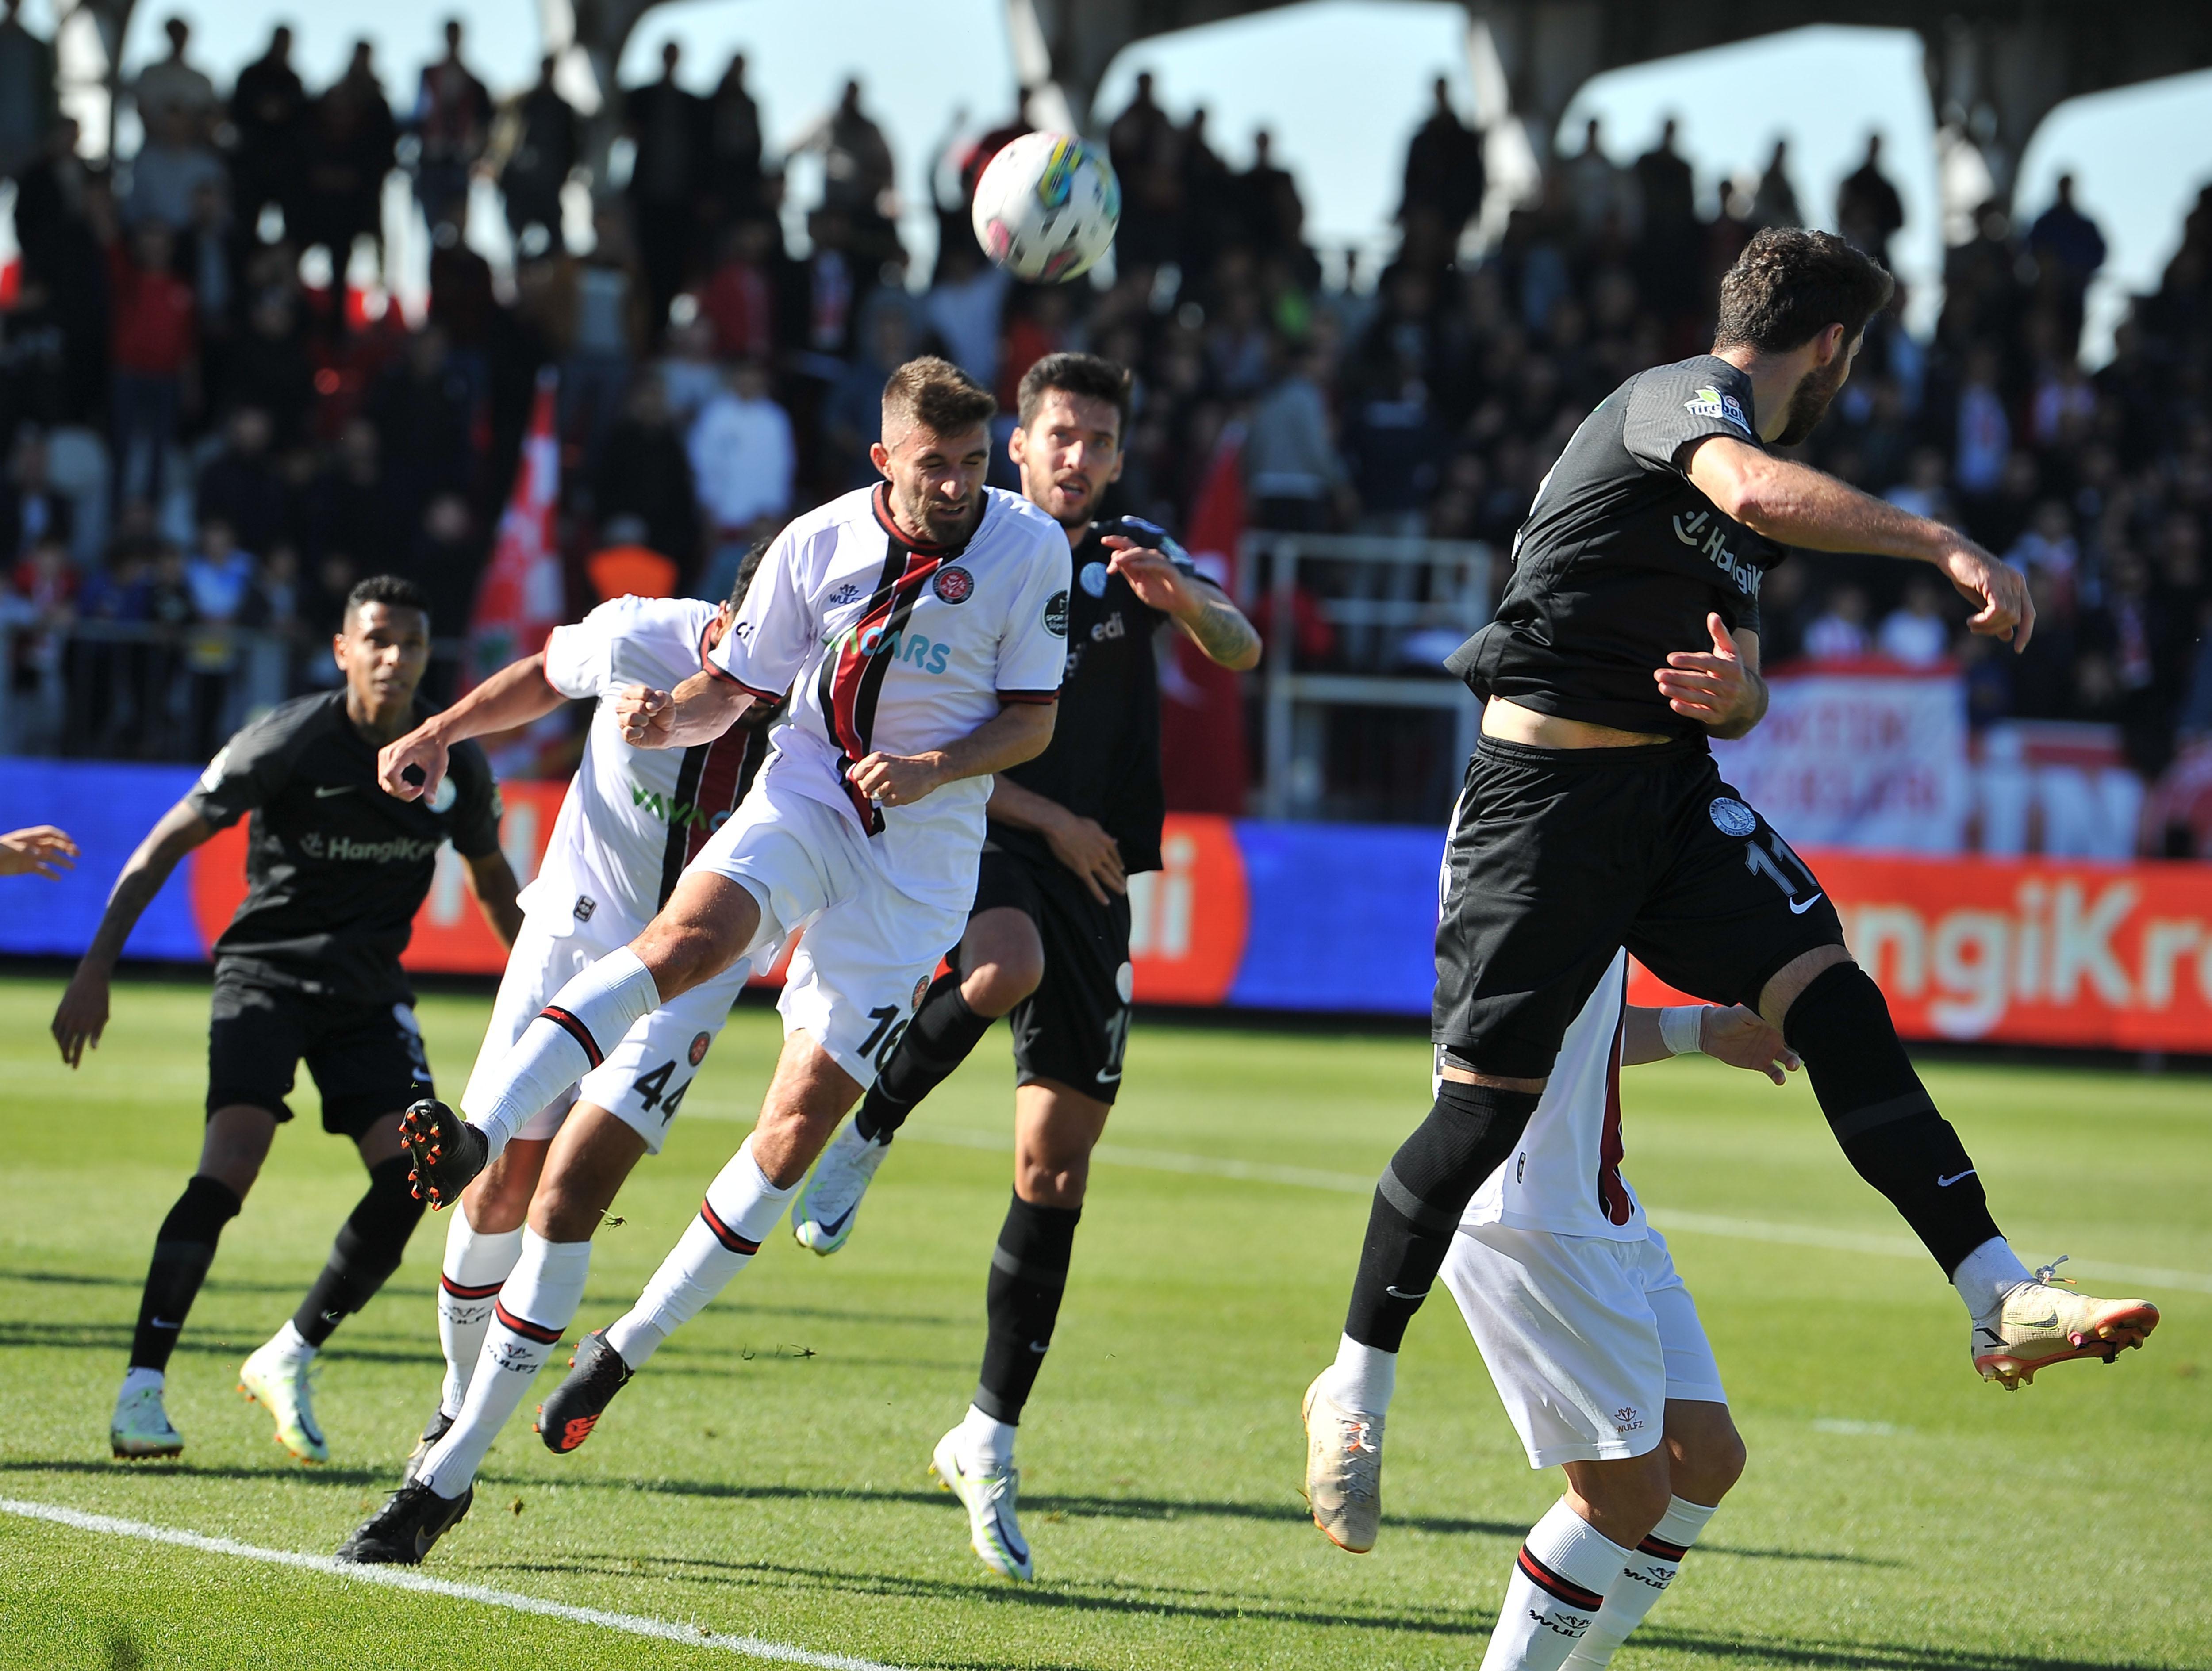 (ÖZET) Ümraniyespor - Fatih Karagümrük maç sonucu: 1-3